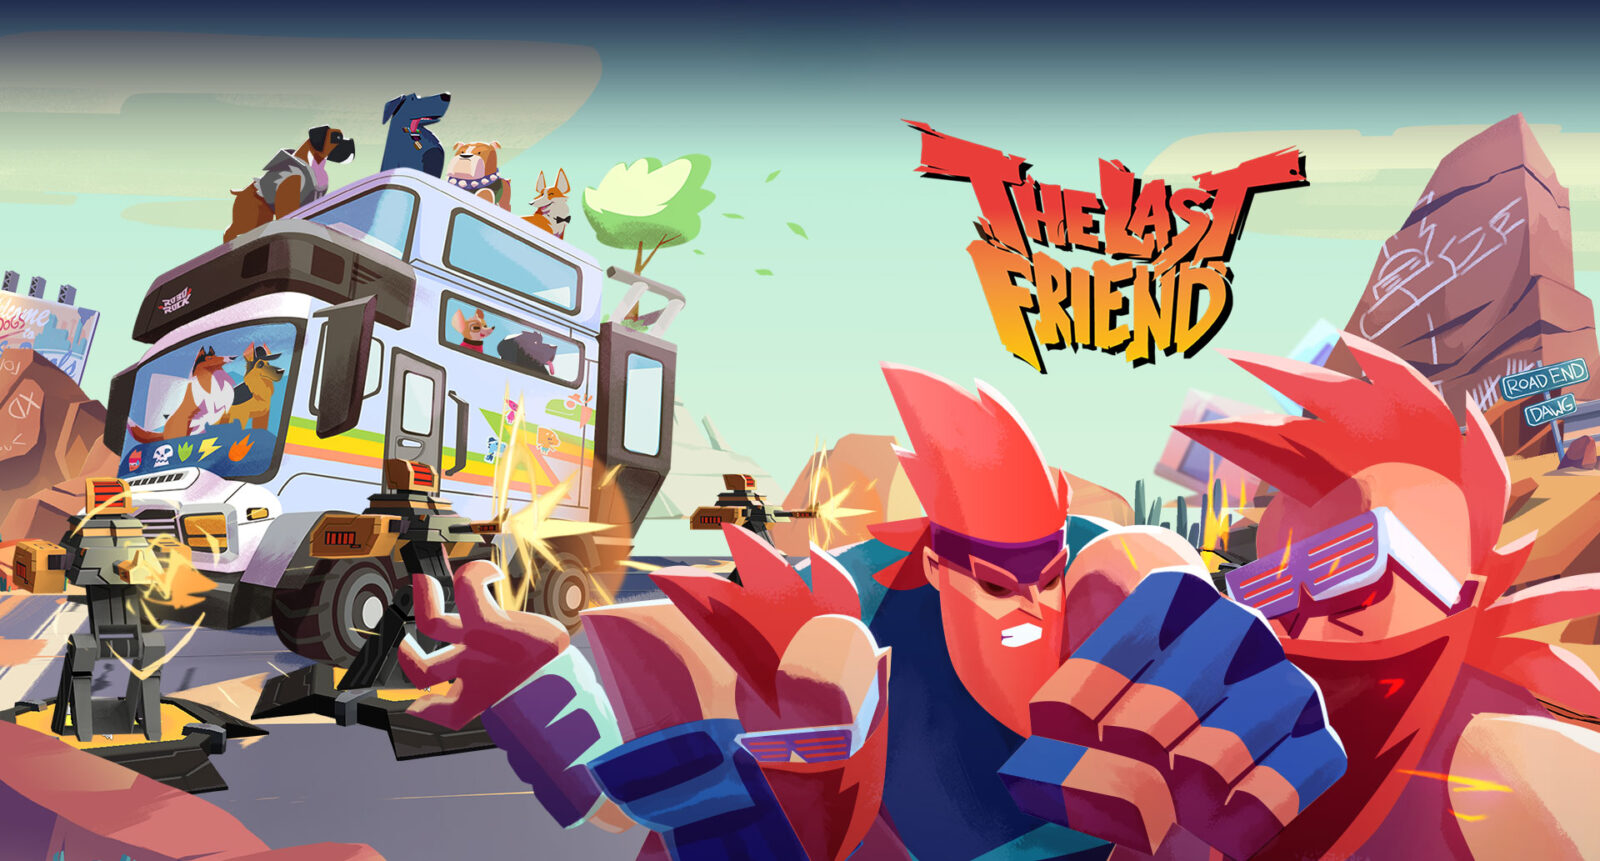 The Last Friend: novo trailer apresenta seu aliado de batalha corgi